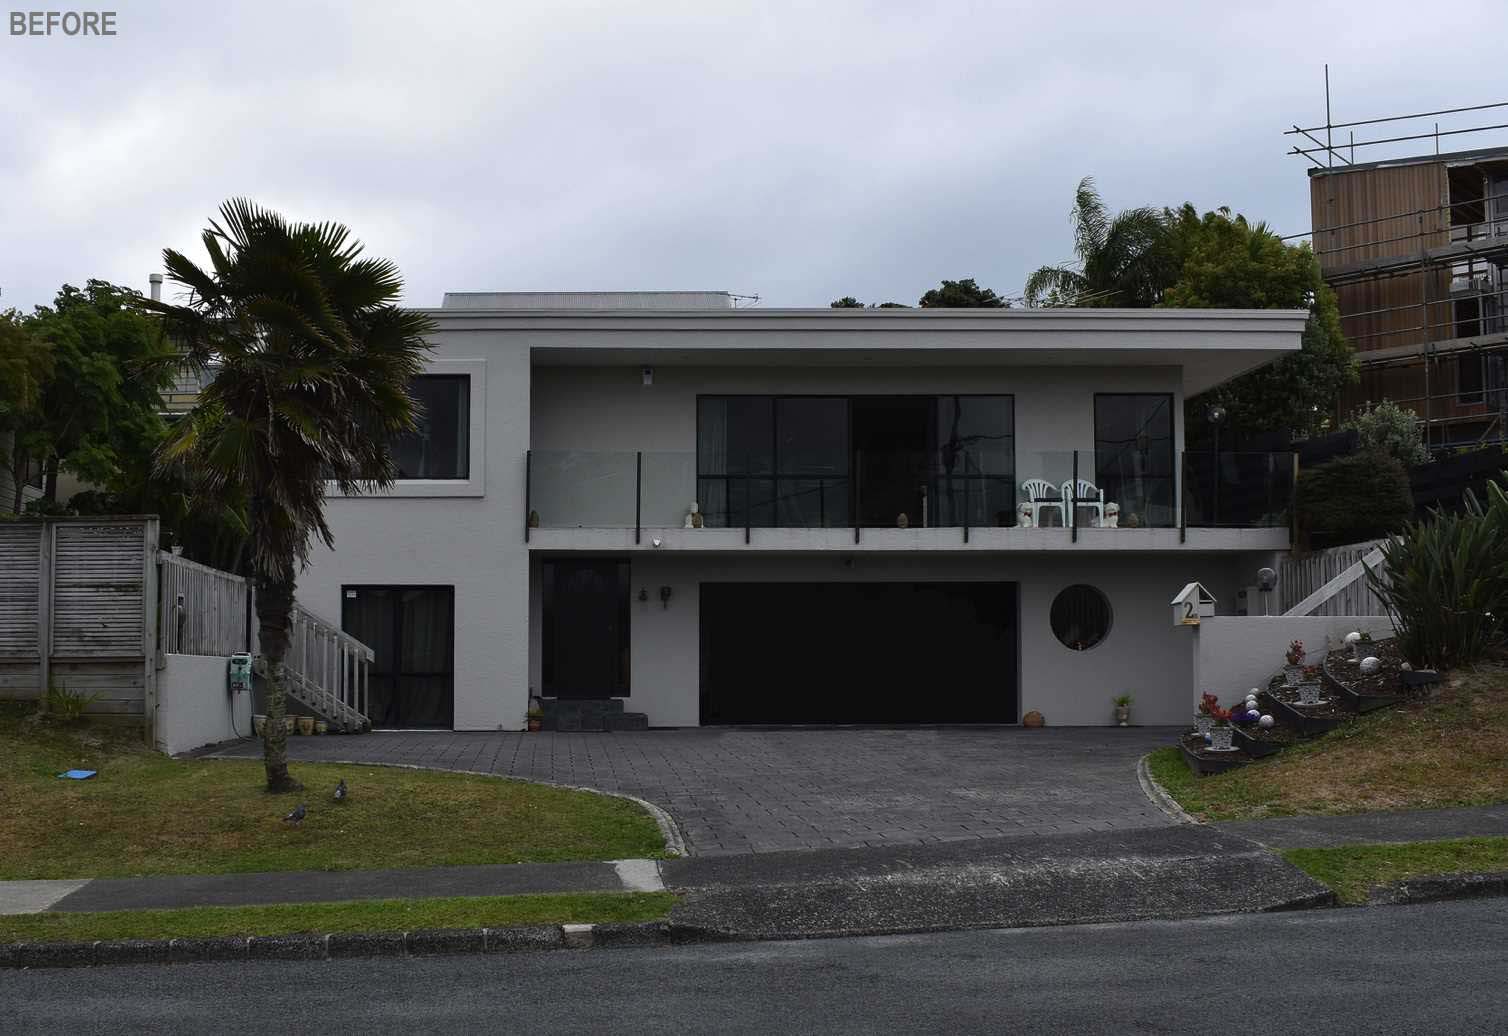 ÎNAINTE - O casă renovată din anii 1980, placată cu ipsos, din Noua Zeelandă, a primit un exterior modern din lemn de culoare închisă și ferestre noi.